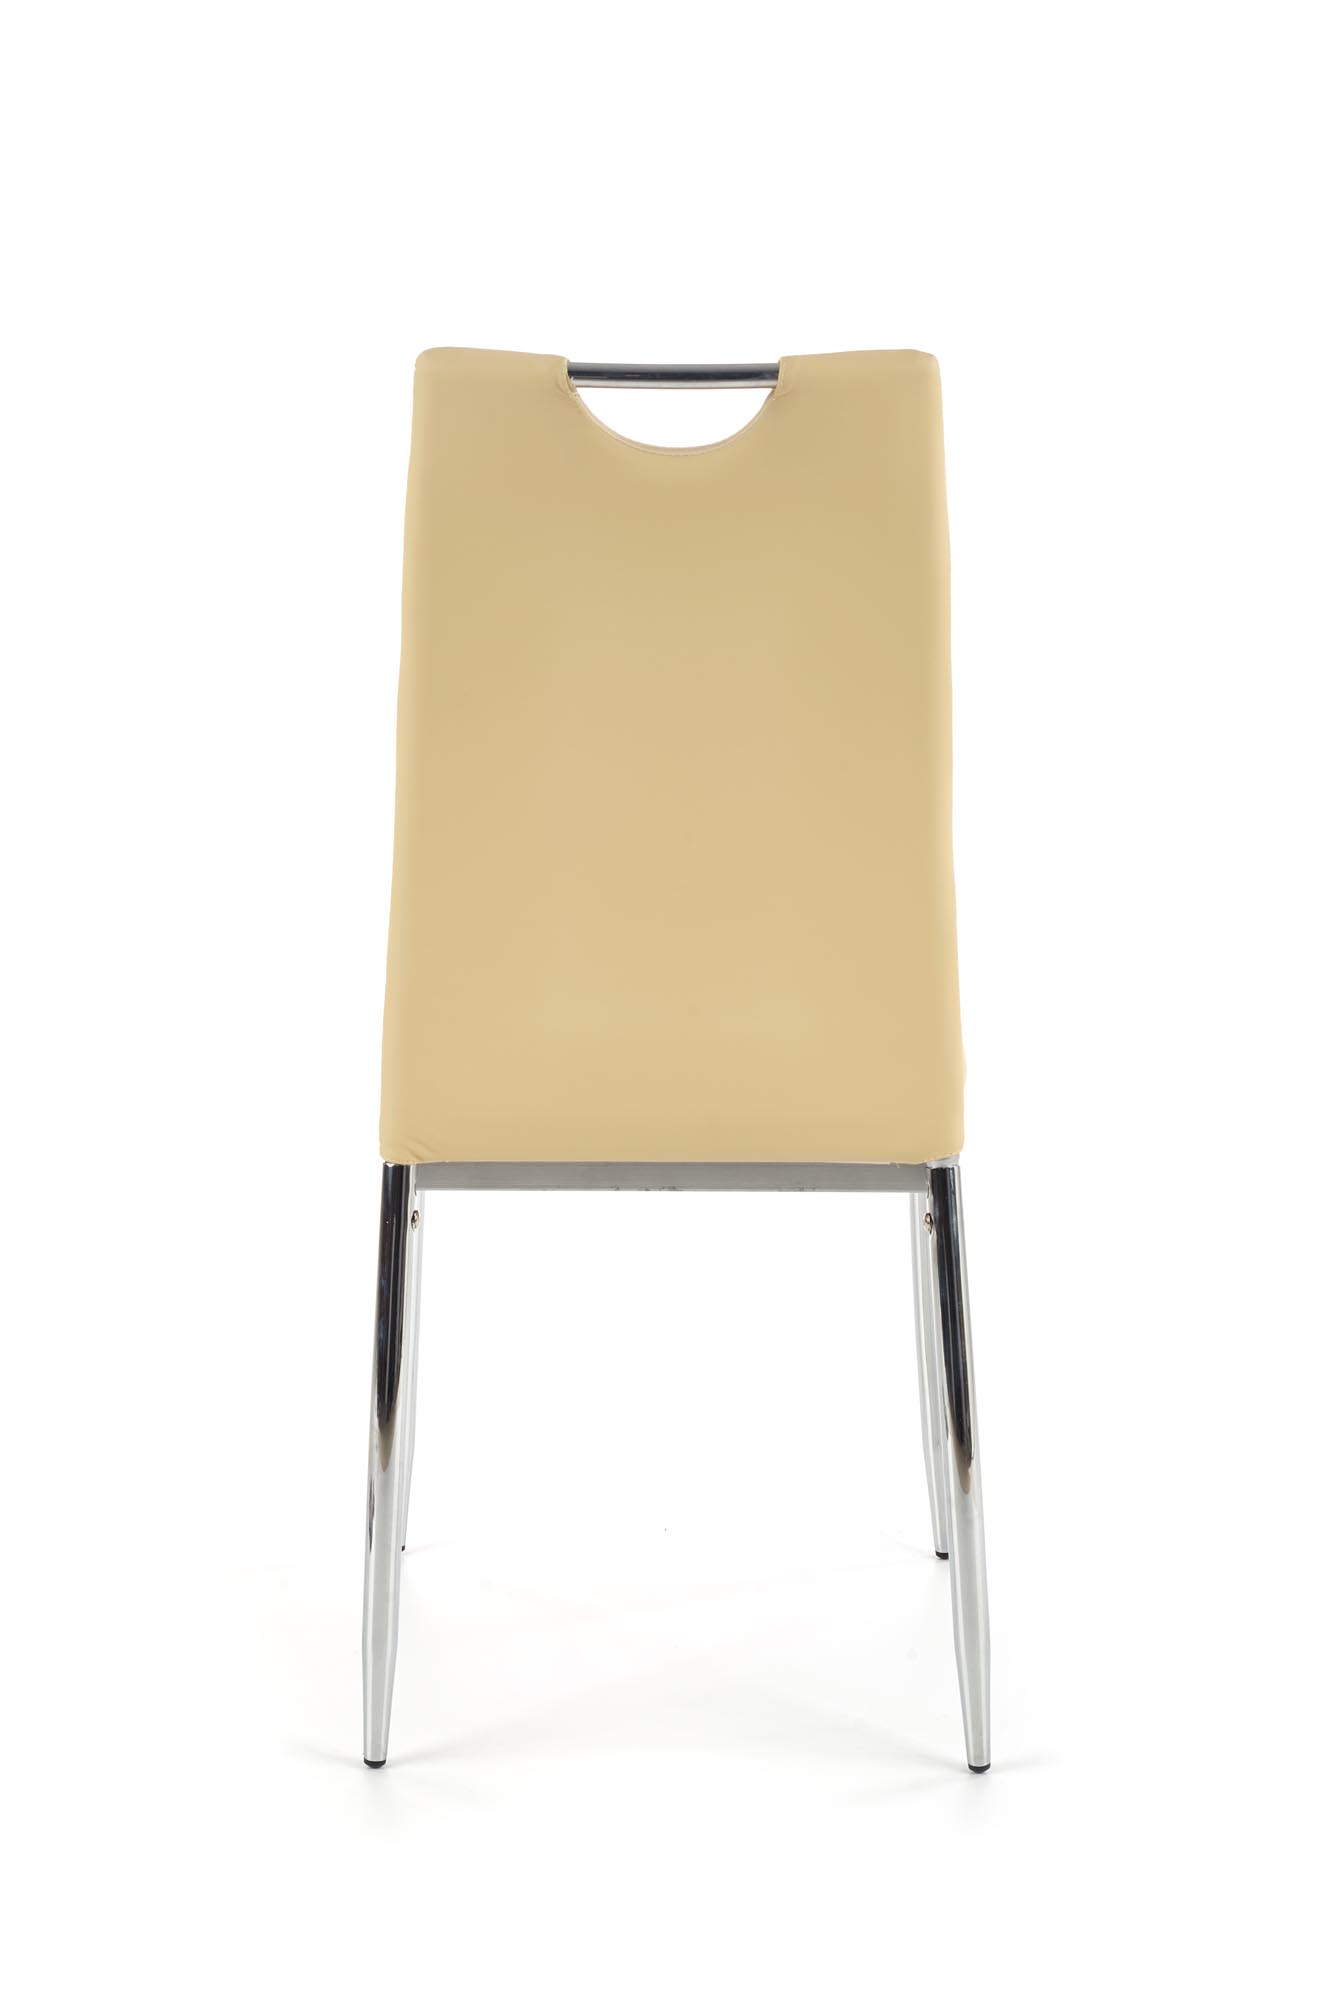 K187 krzesło beżowy k187 krzesło beżowy